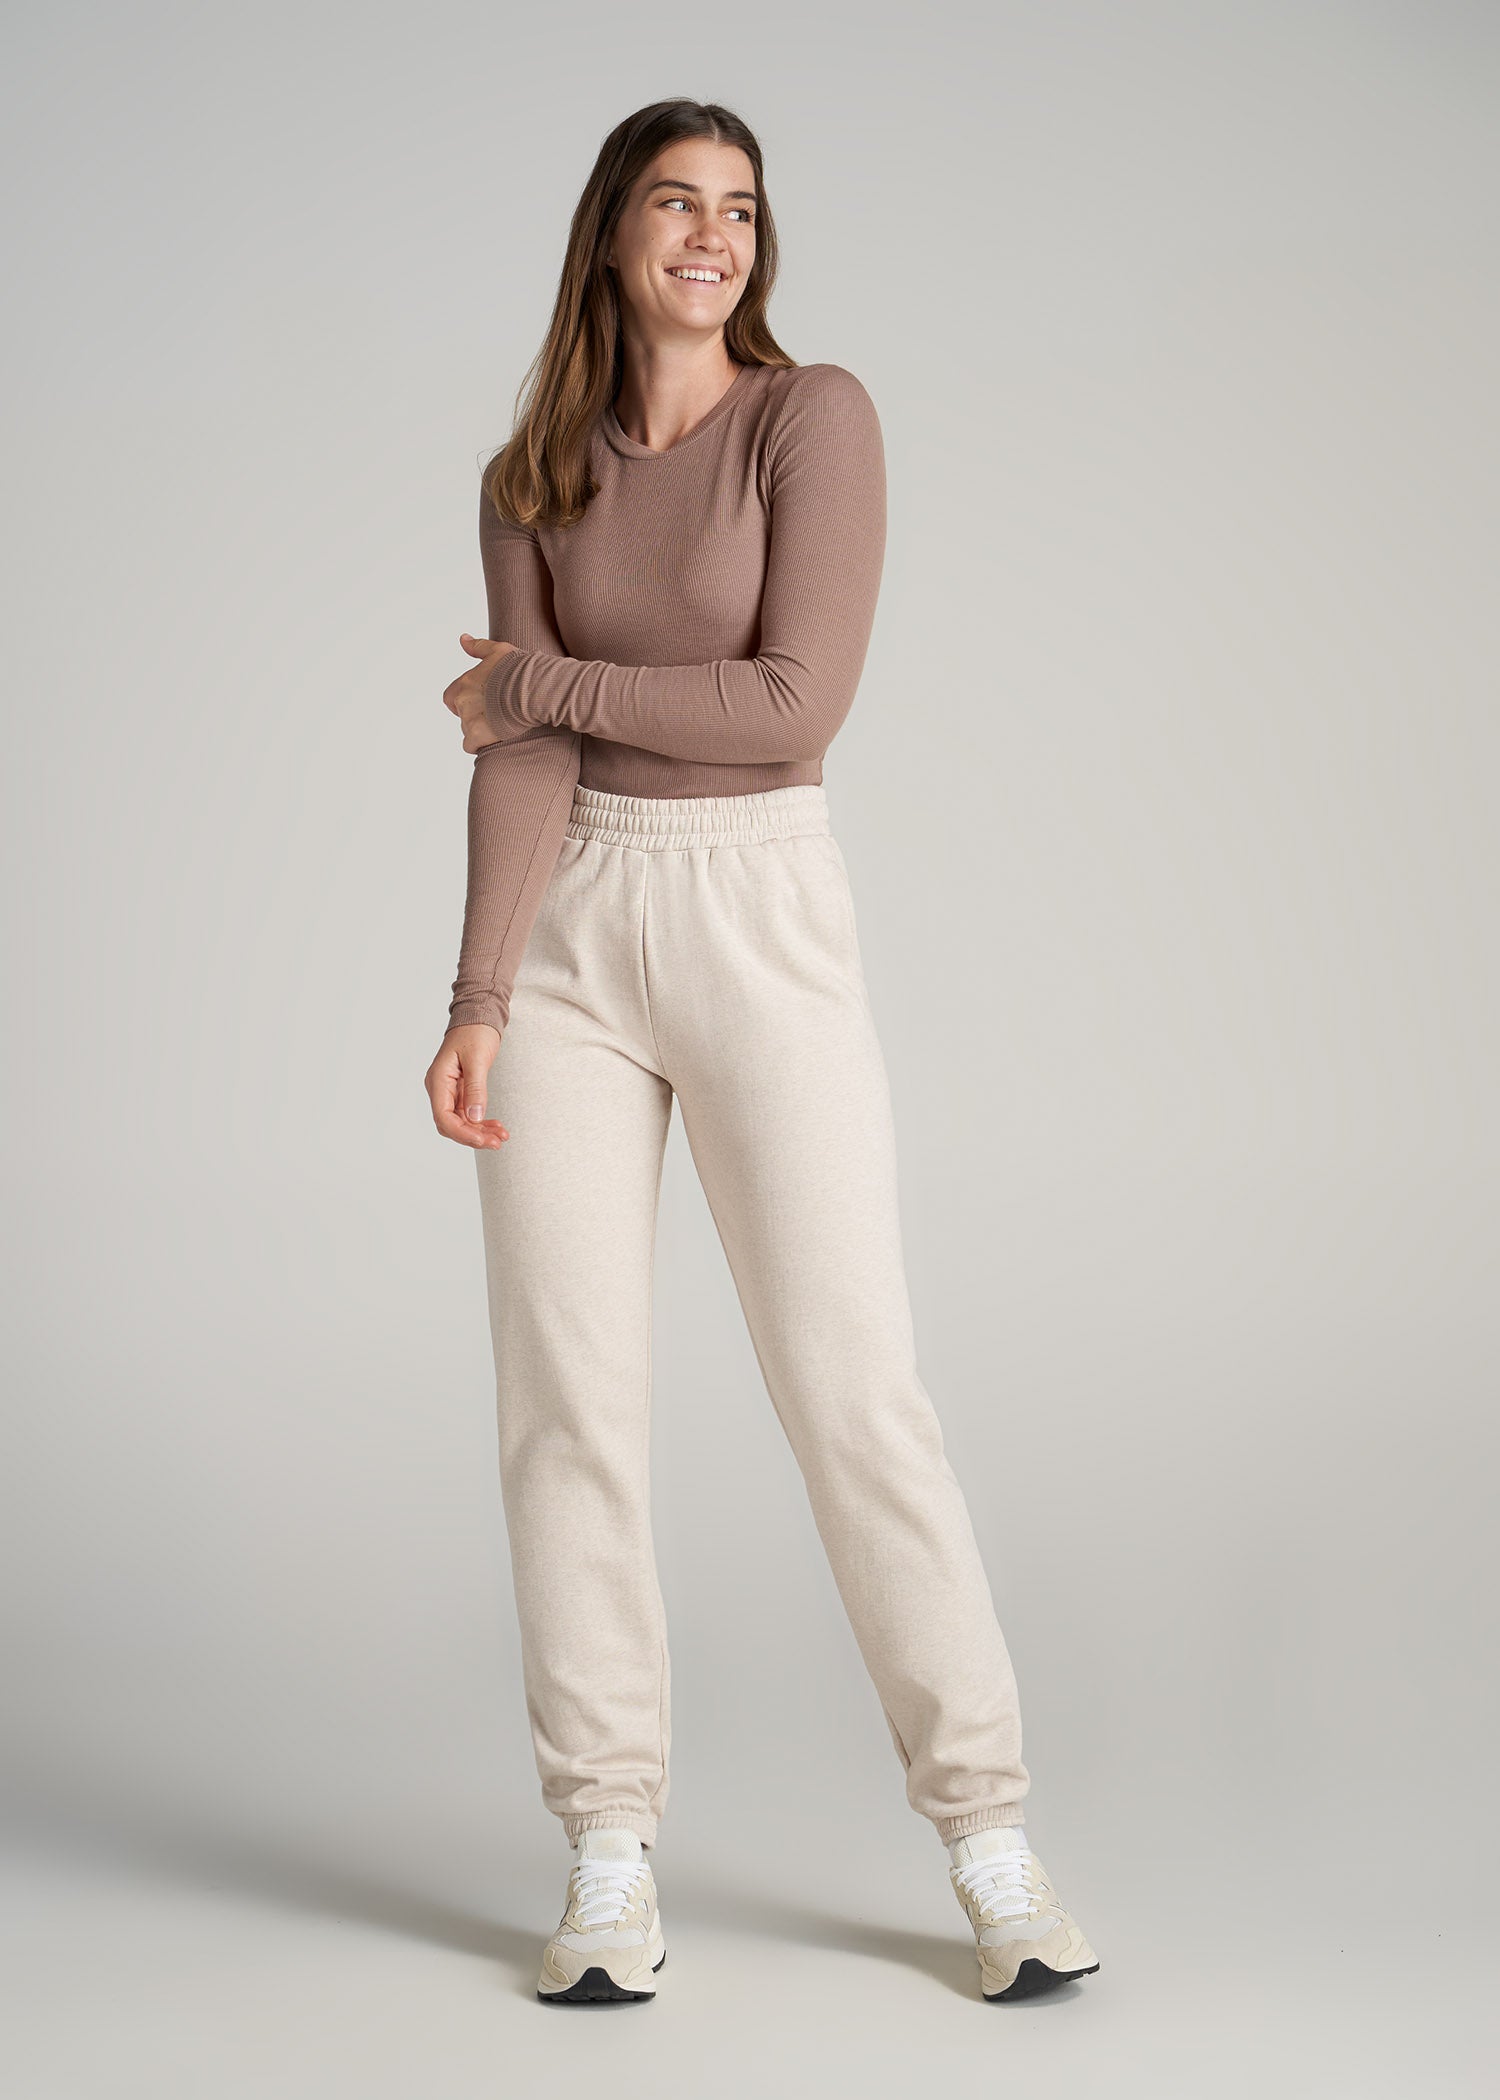 Wearever Fleece Relaxed Women's Tall Sweatpants in Oatmeal Mix